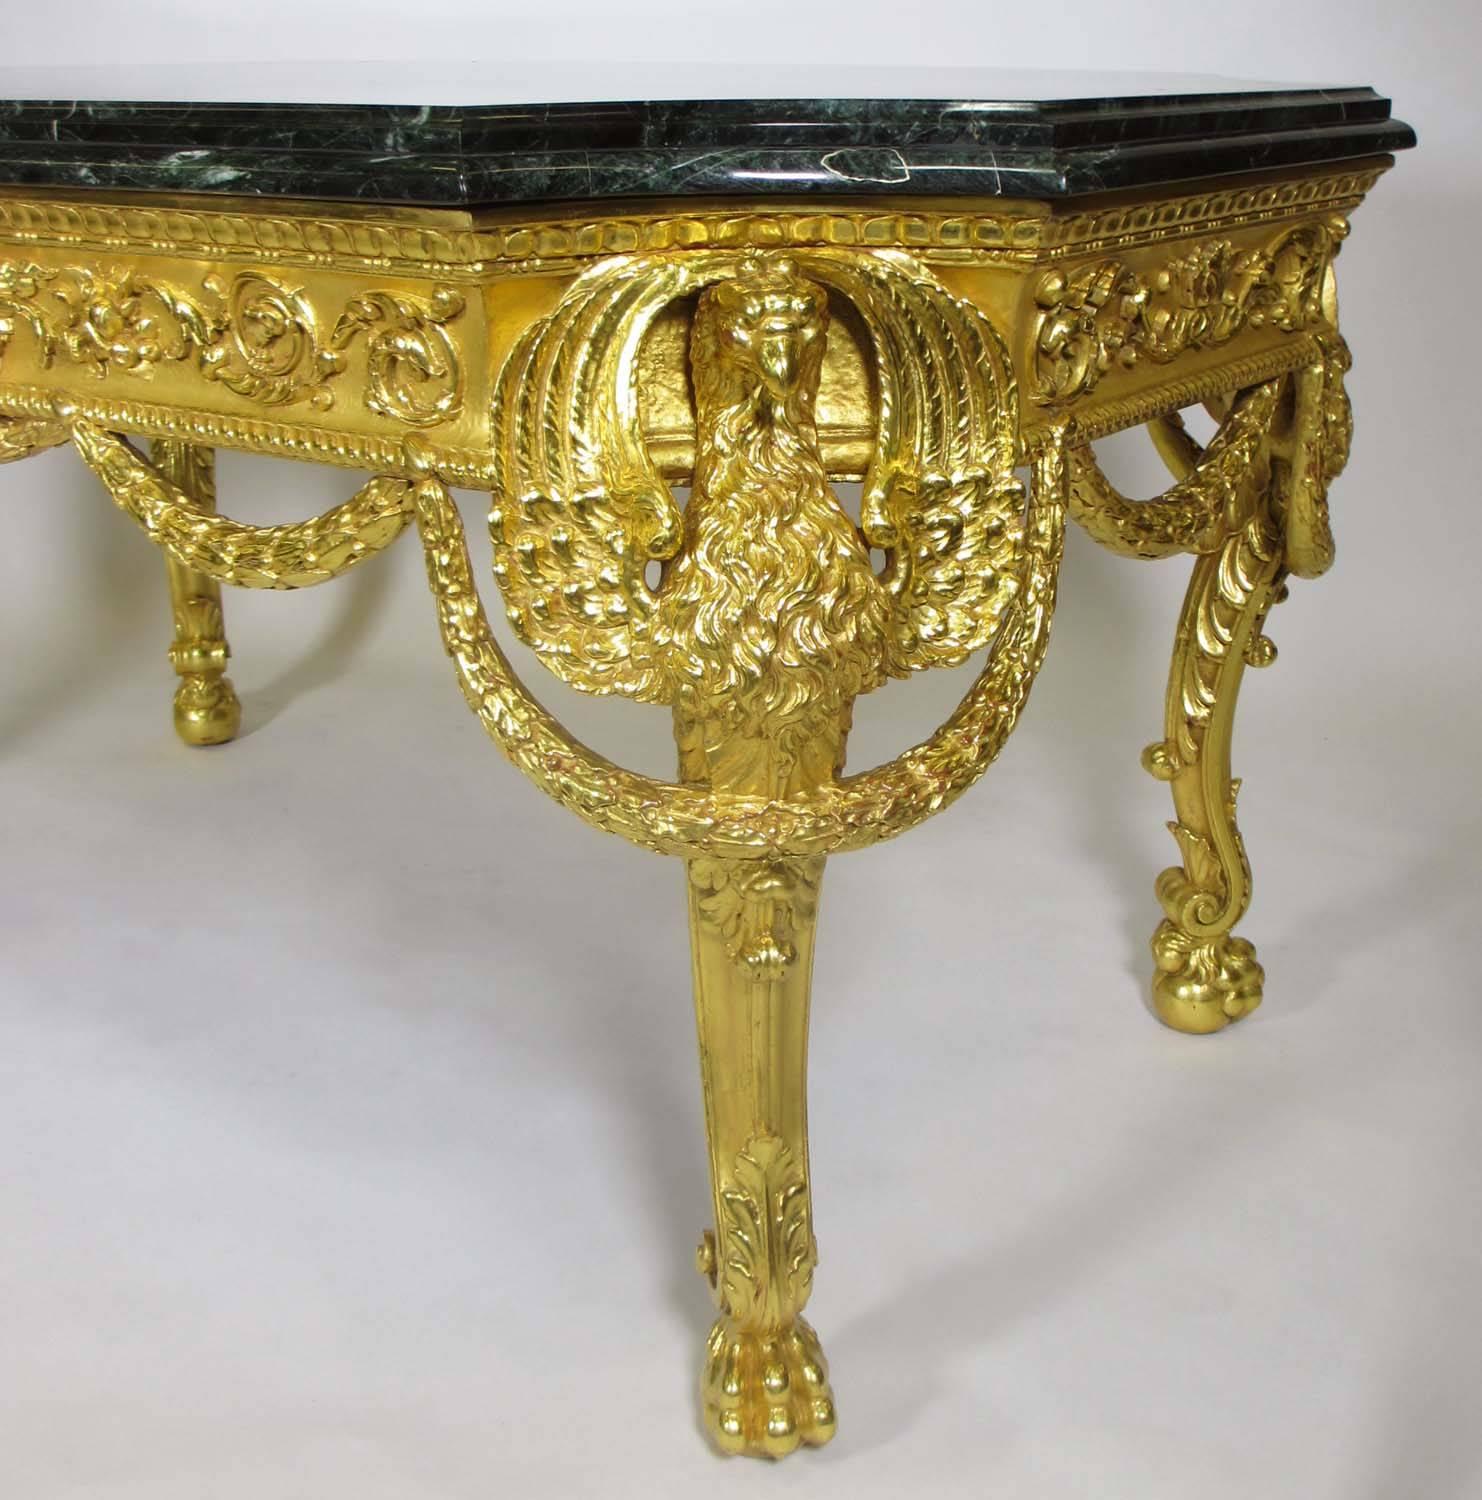 Très belle table centrale en bois doré sculpté de style Empire du XIXe siècle avec des aigles ailés et des couronnes, le médaillon central avec un taureau et un lion sur pattes au-dessus d'une sphère, avec un plateau en marbre verde d'alpes veiné